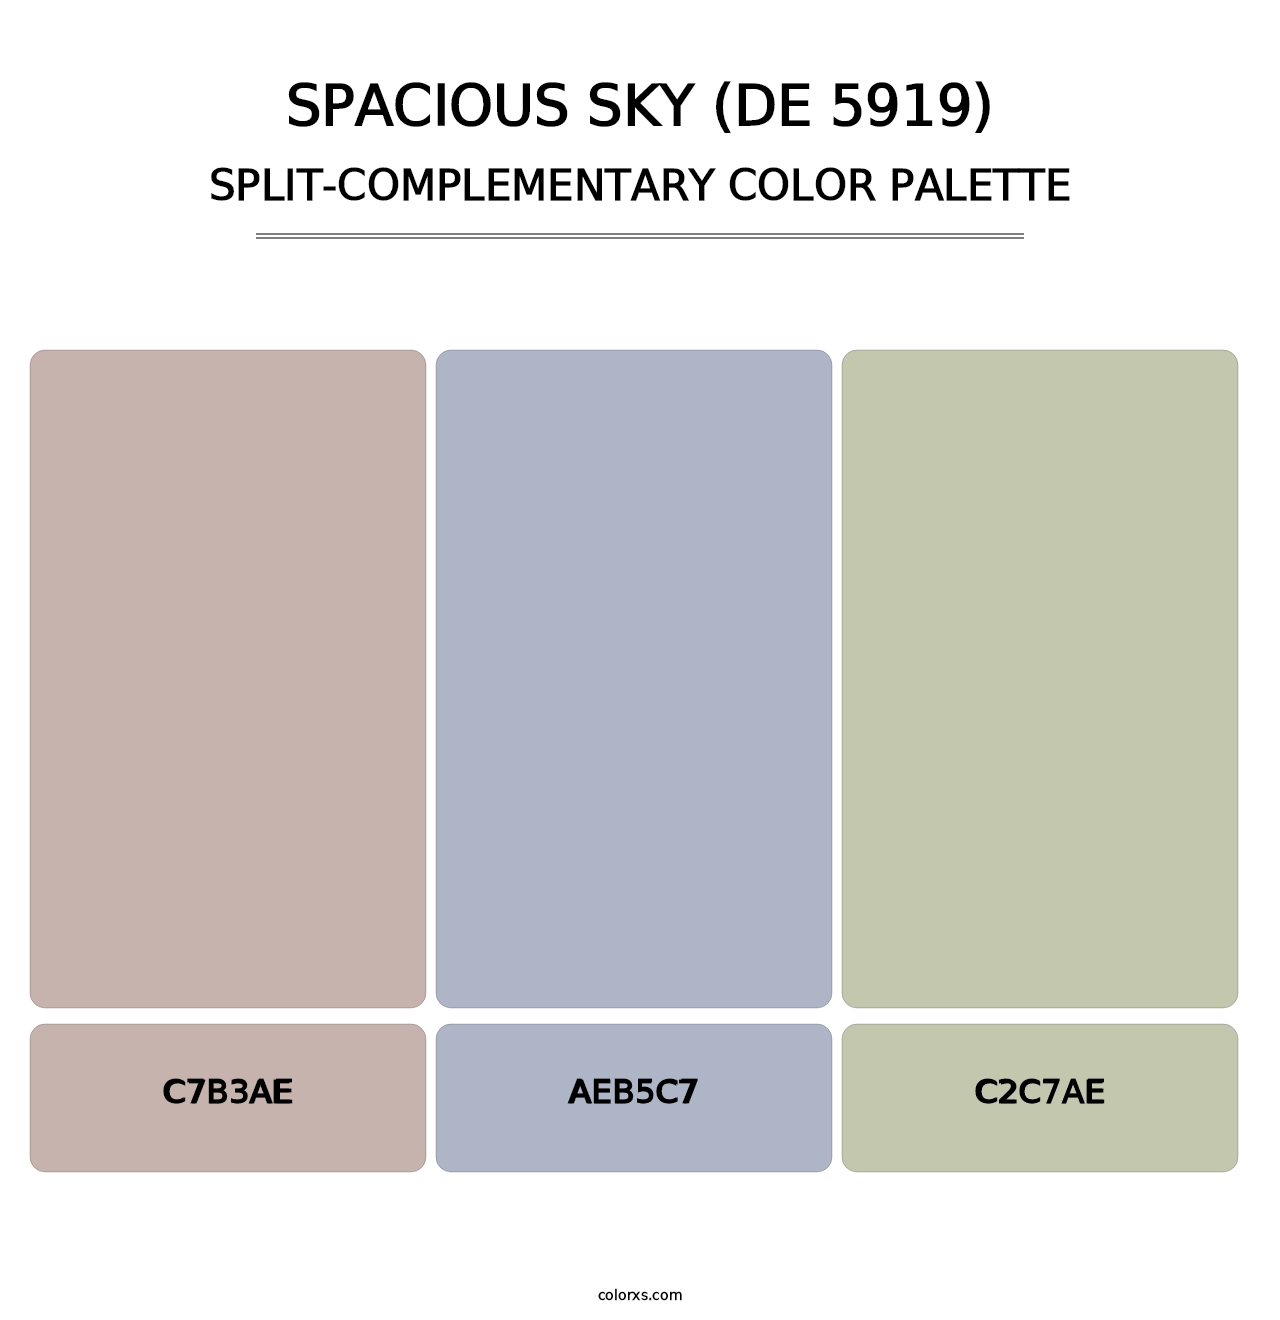 Spacious Sky (DE 5919) - Split-Complementary Color Palette